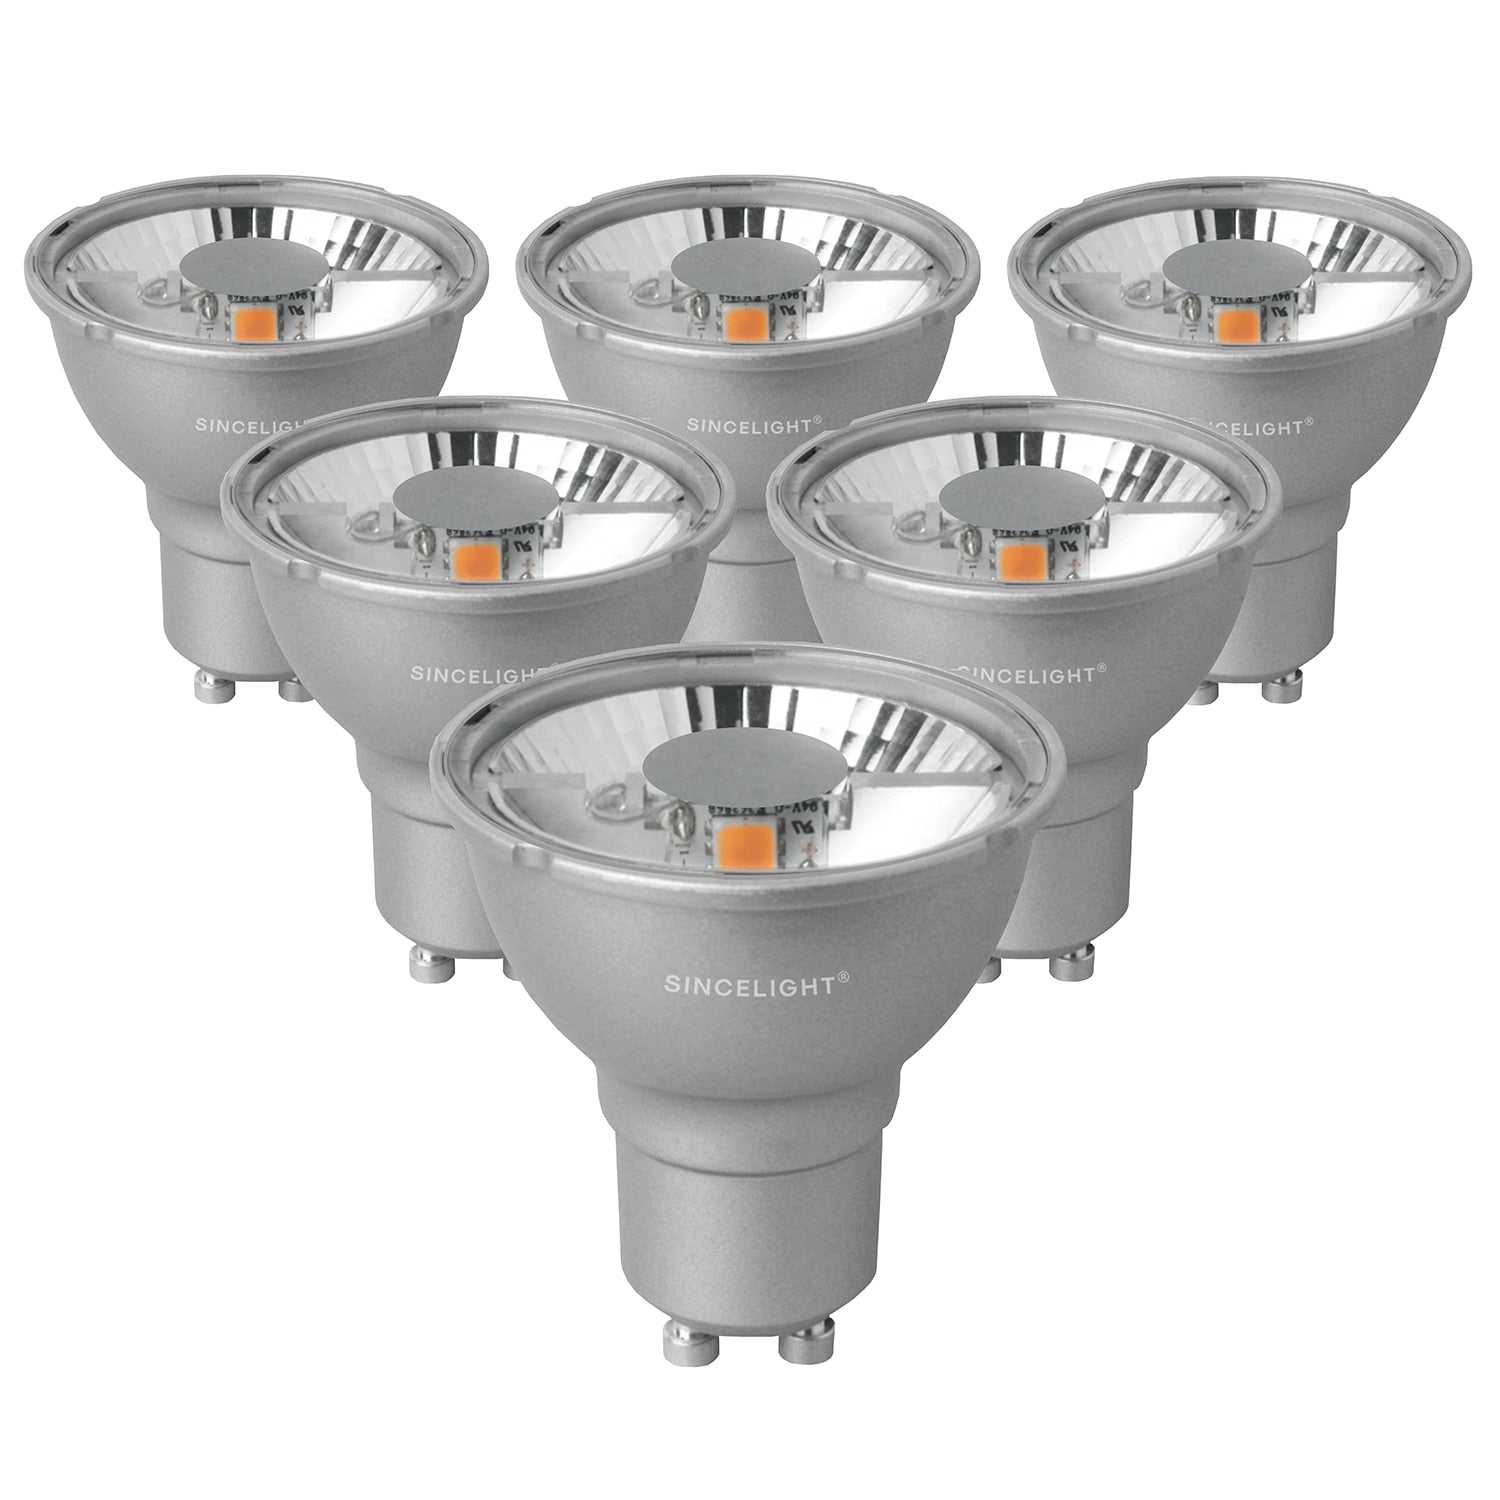 Pack of 6, PAR16 Led Gu10 Reflector Bulbs,5W,2700-6500K,220V, Professional Anti-Glare Spo light Downlights For Home Office Light